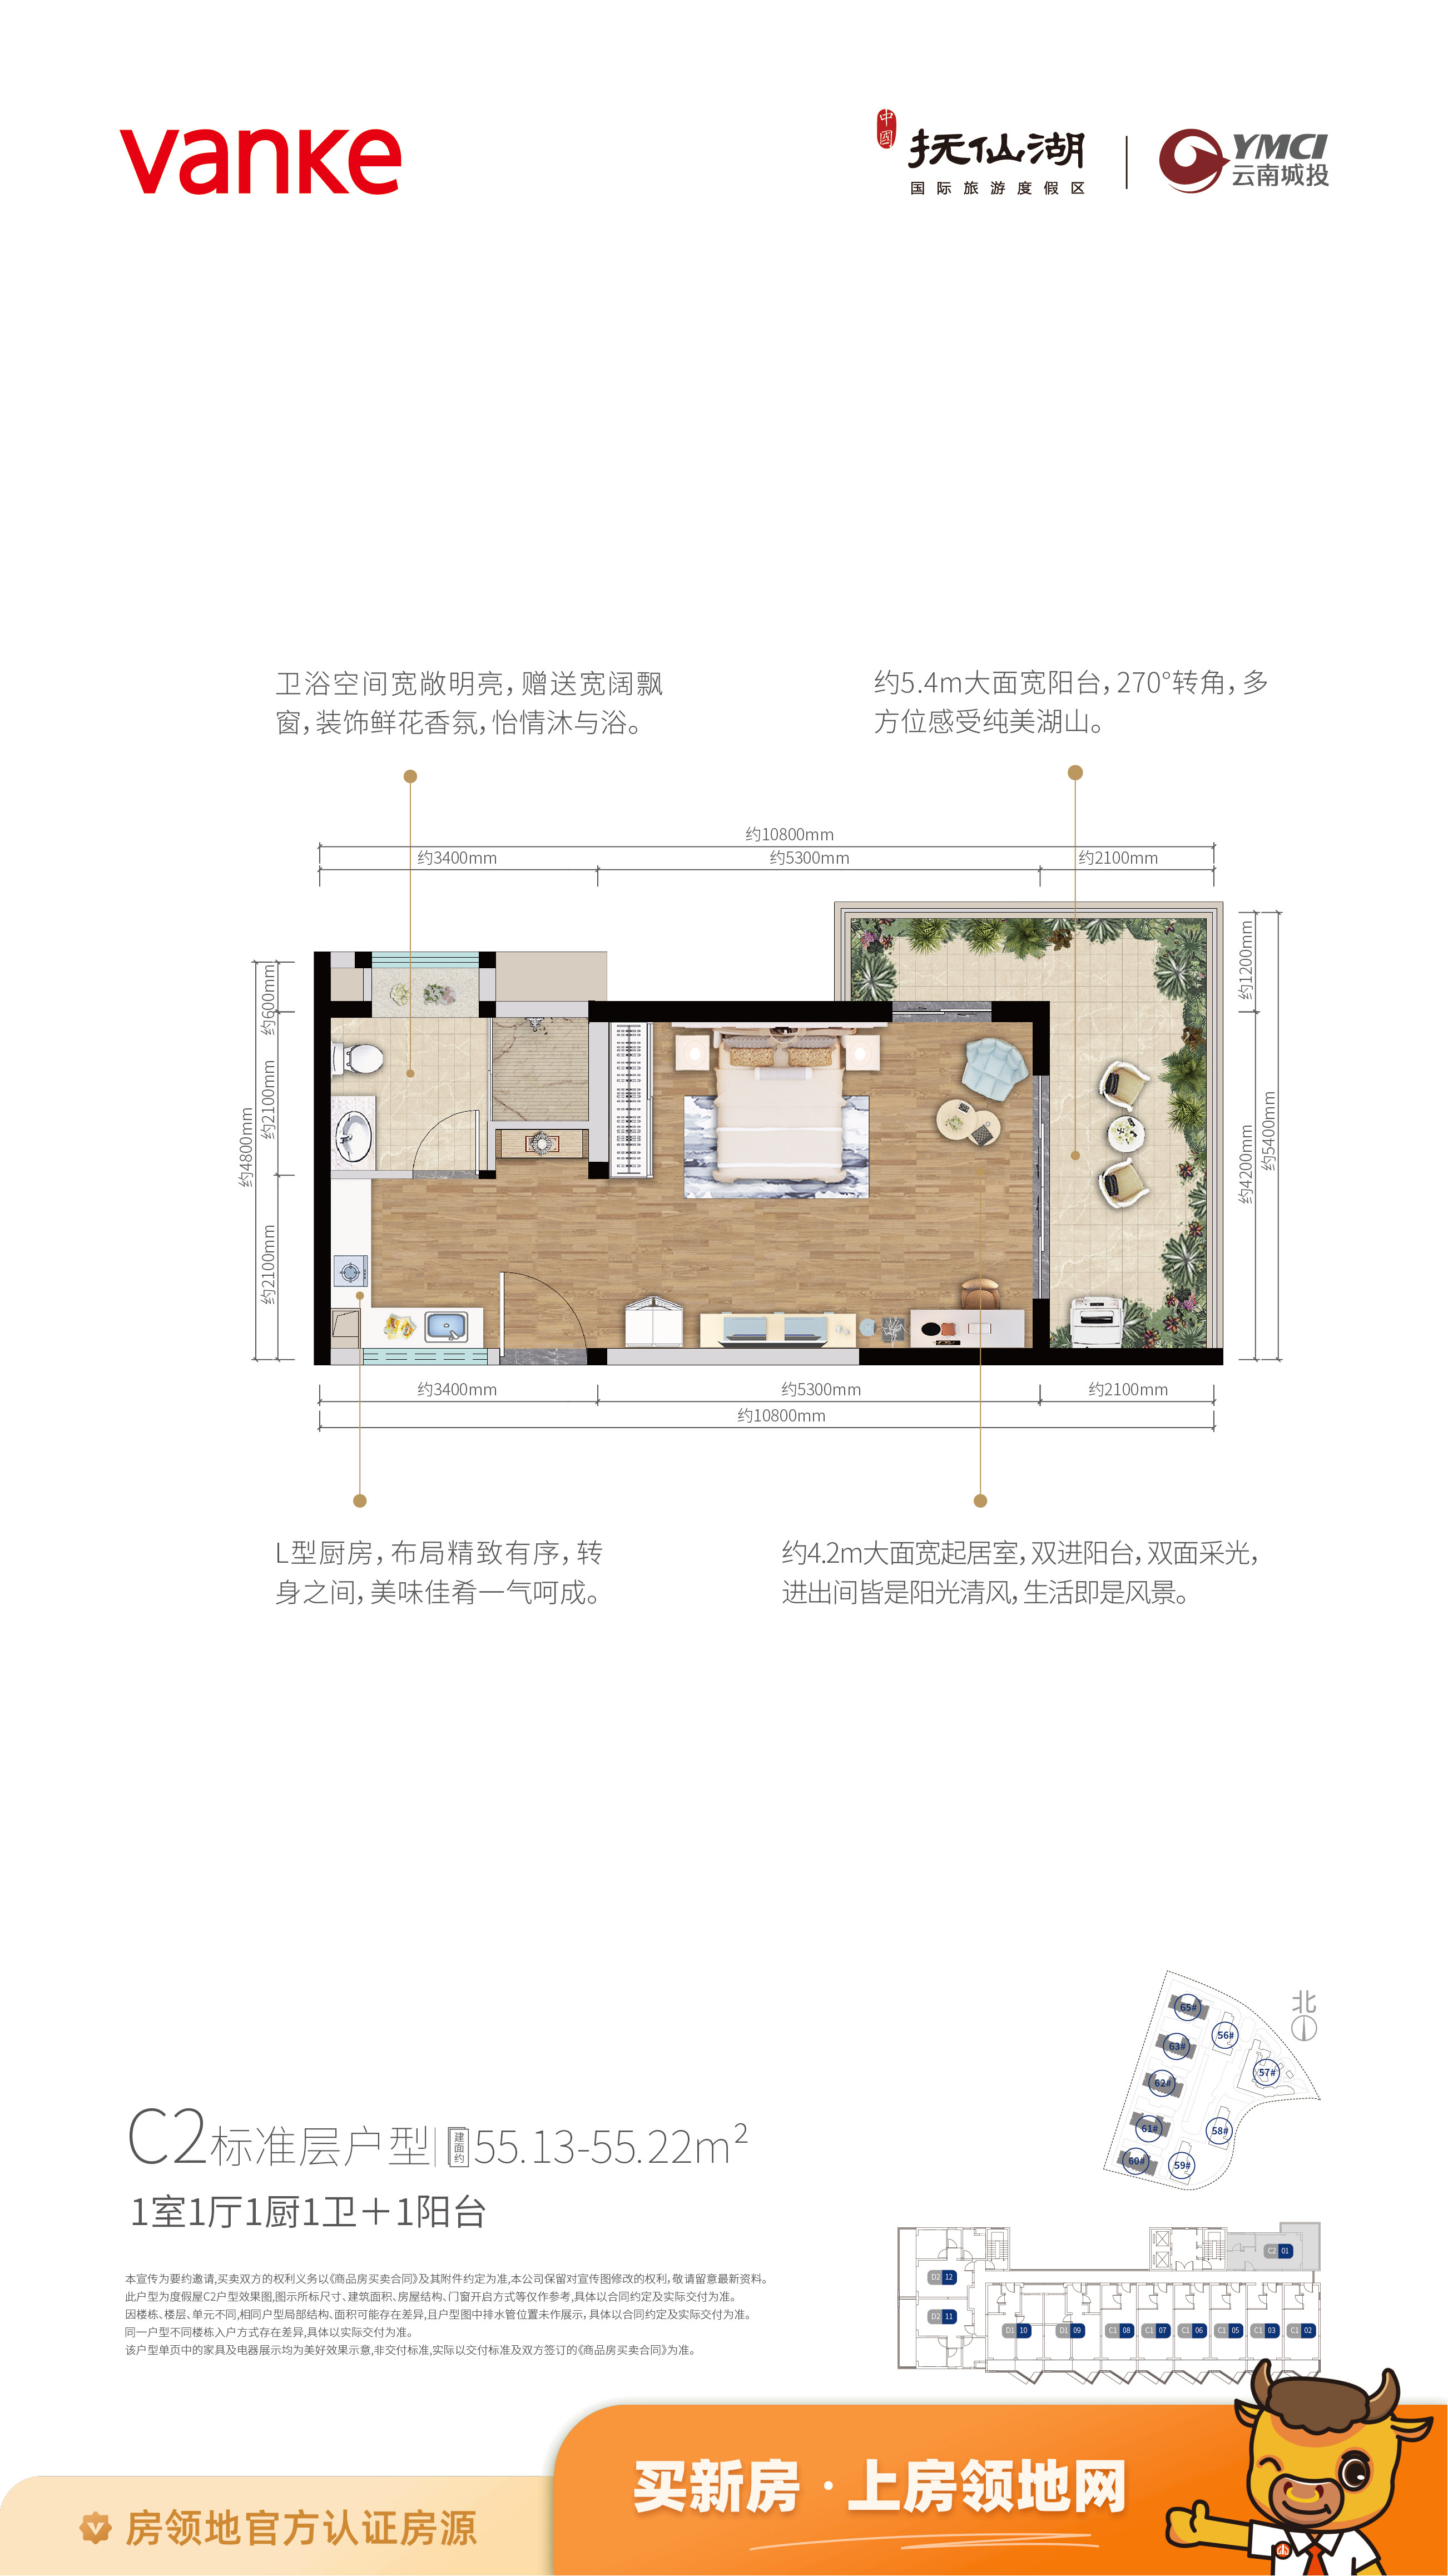 中国抚仙湖国际旅游度假区宽院户型图1室1厅1卫